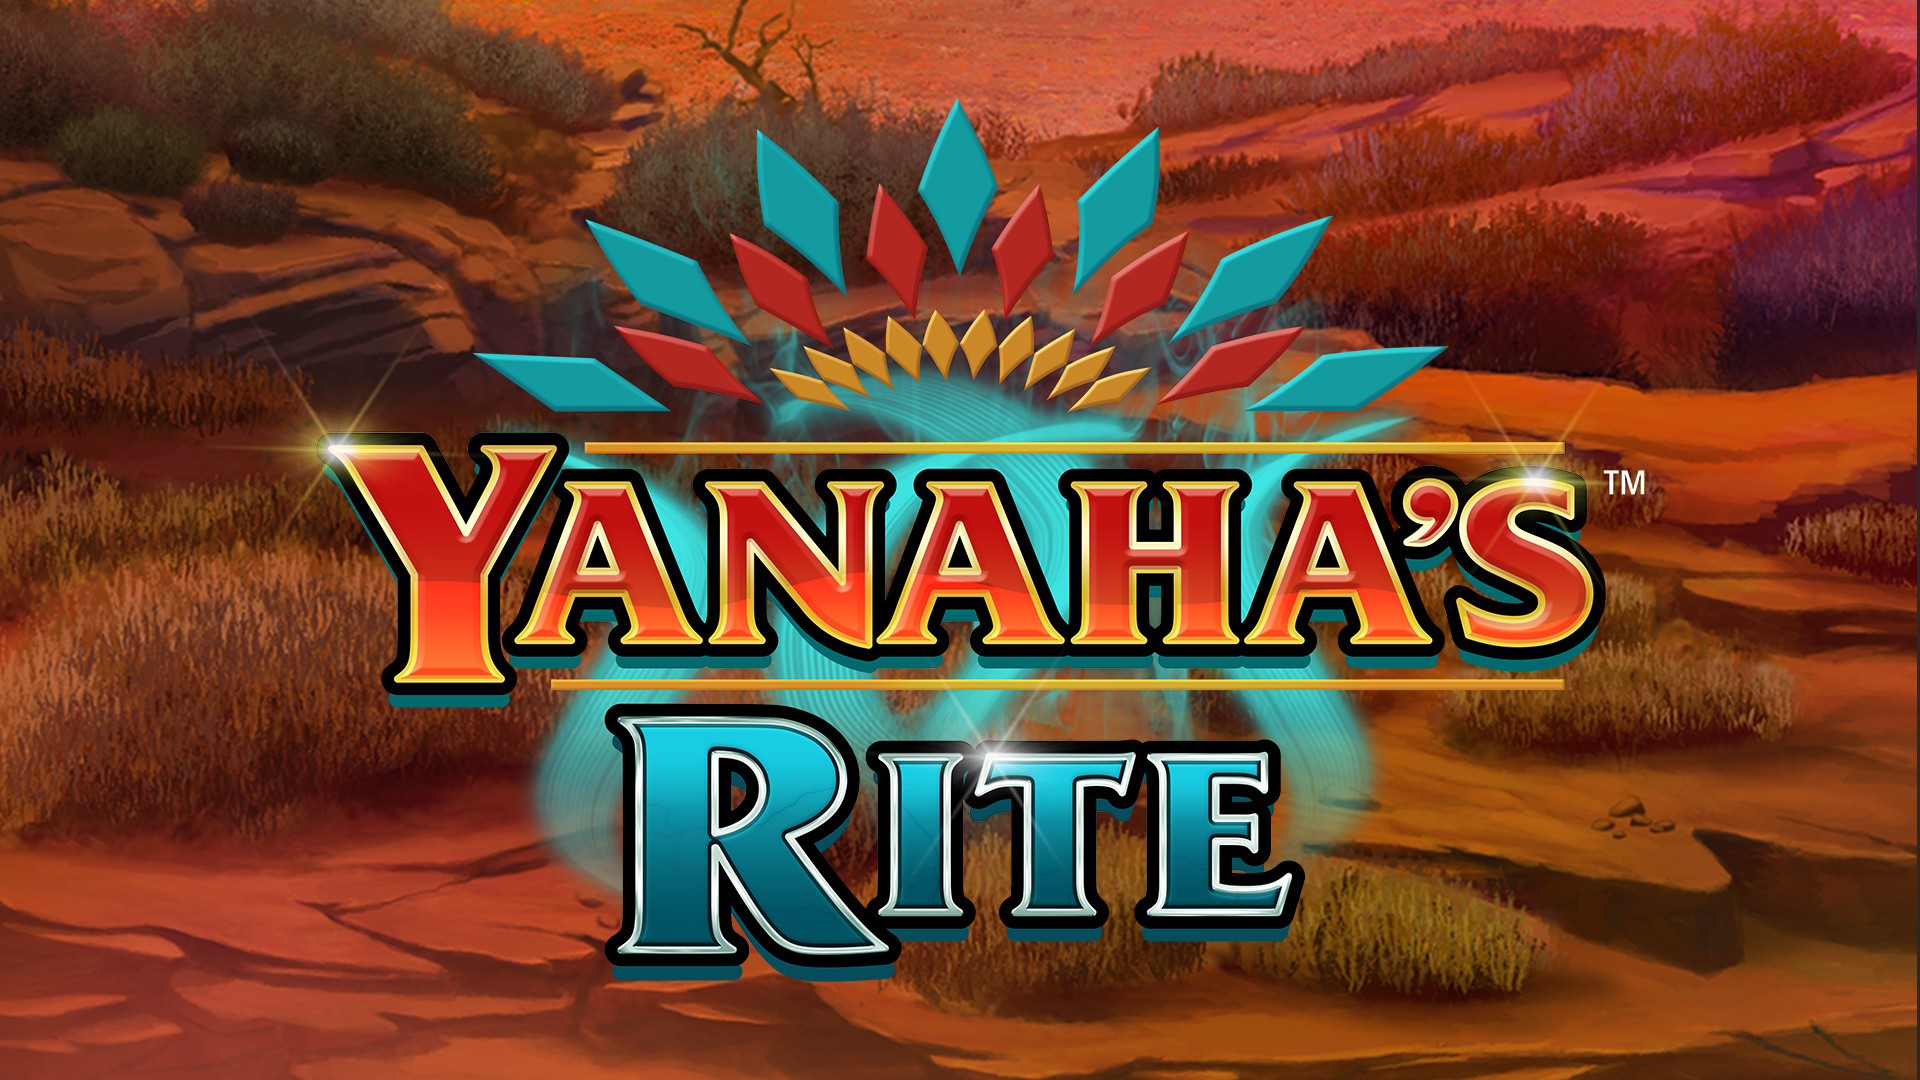 Yanaha's Rite